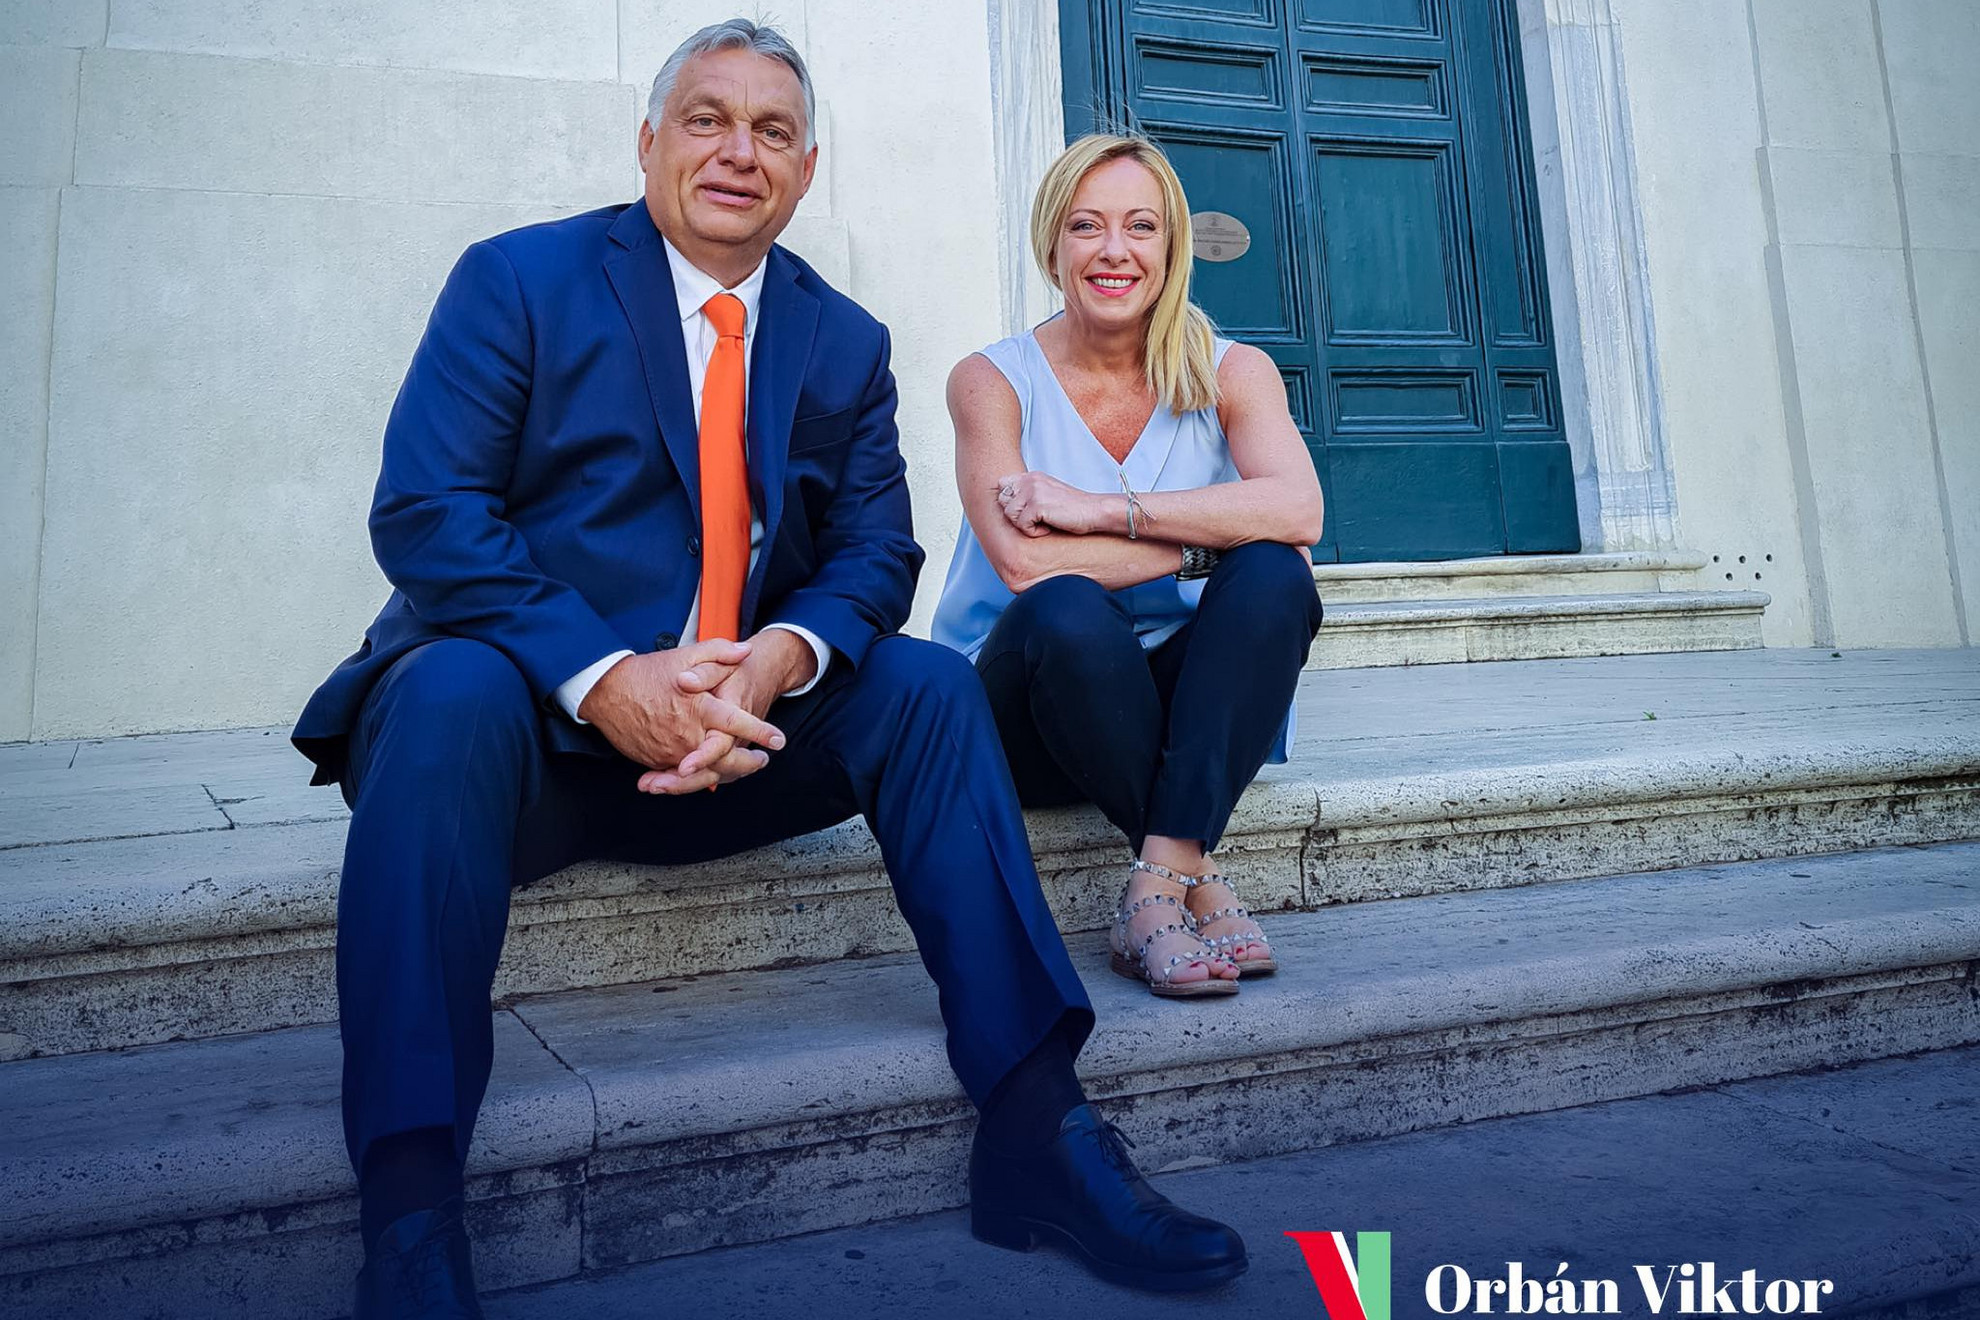 Orbán Viktor ezzel a képpel gratulált Giorgia Meloninak